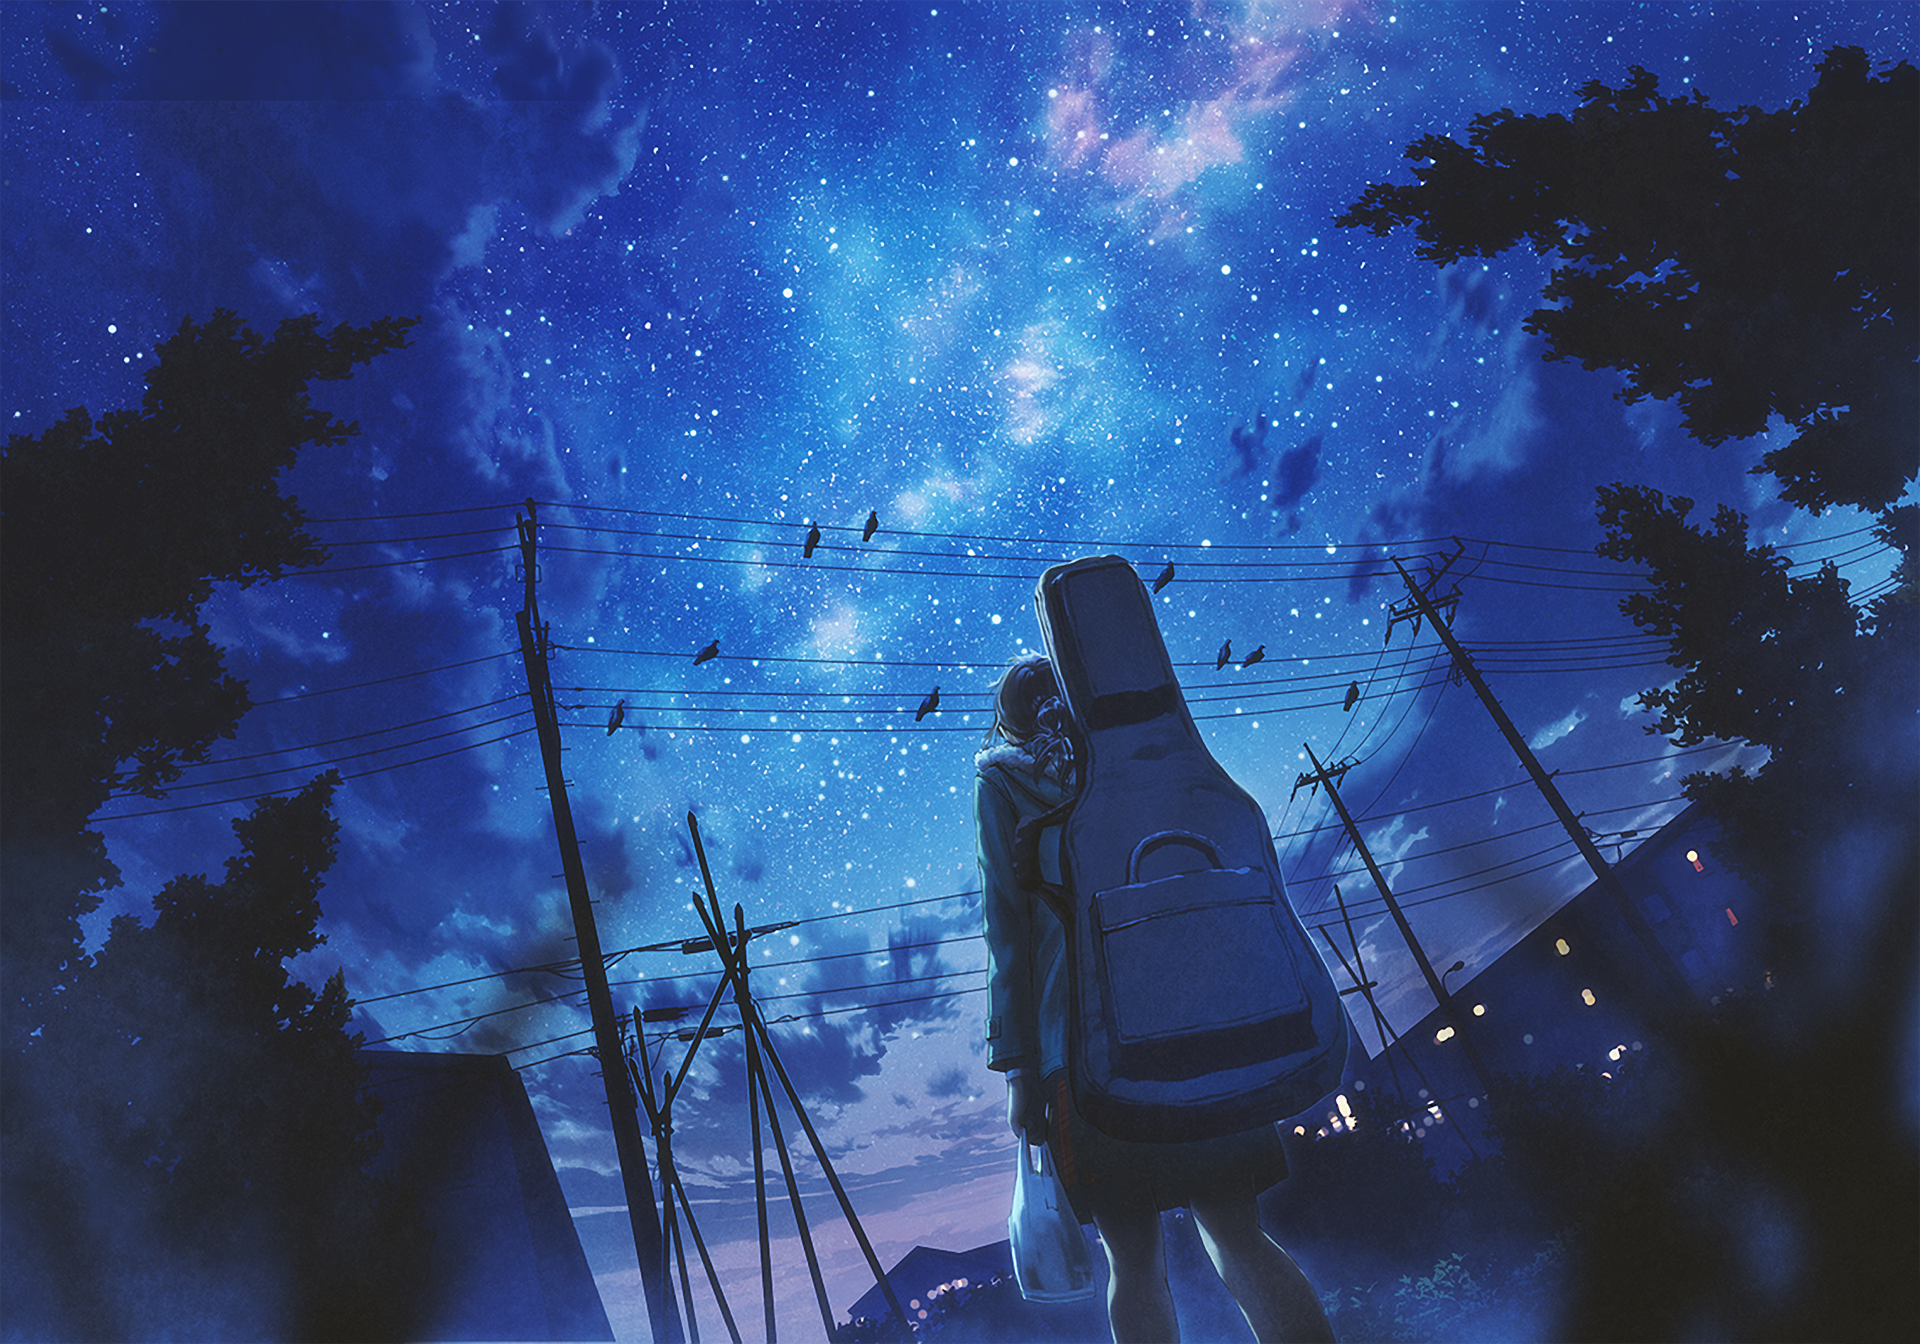 Starry Street Anime Night - HD Wallpaper by mocha